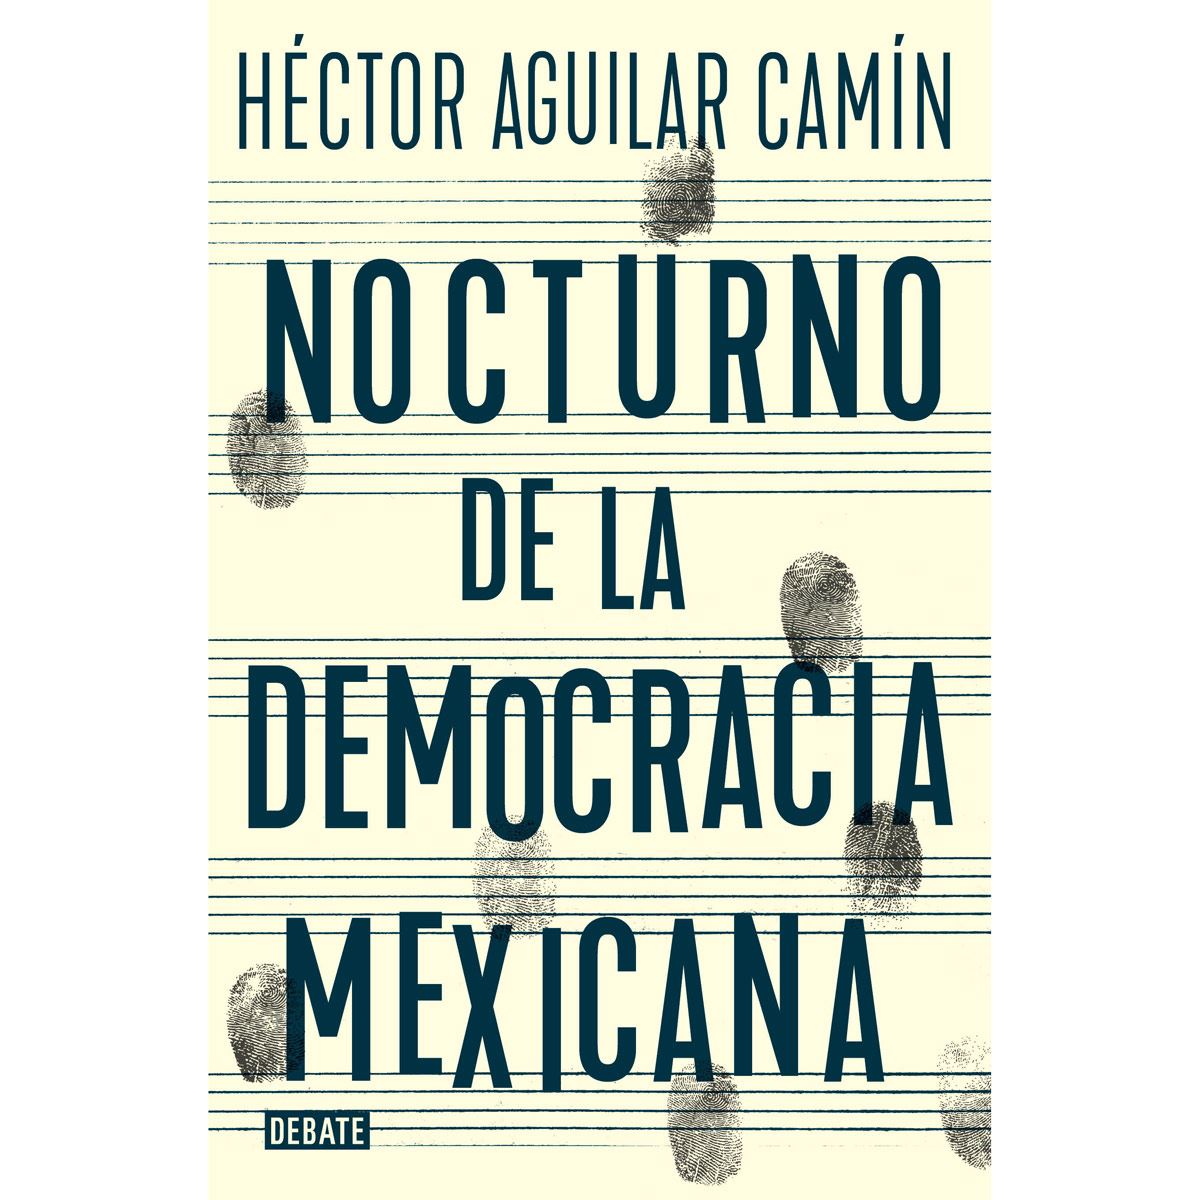 Nocturno de la democracia mexicana